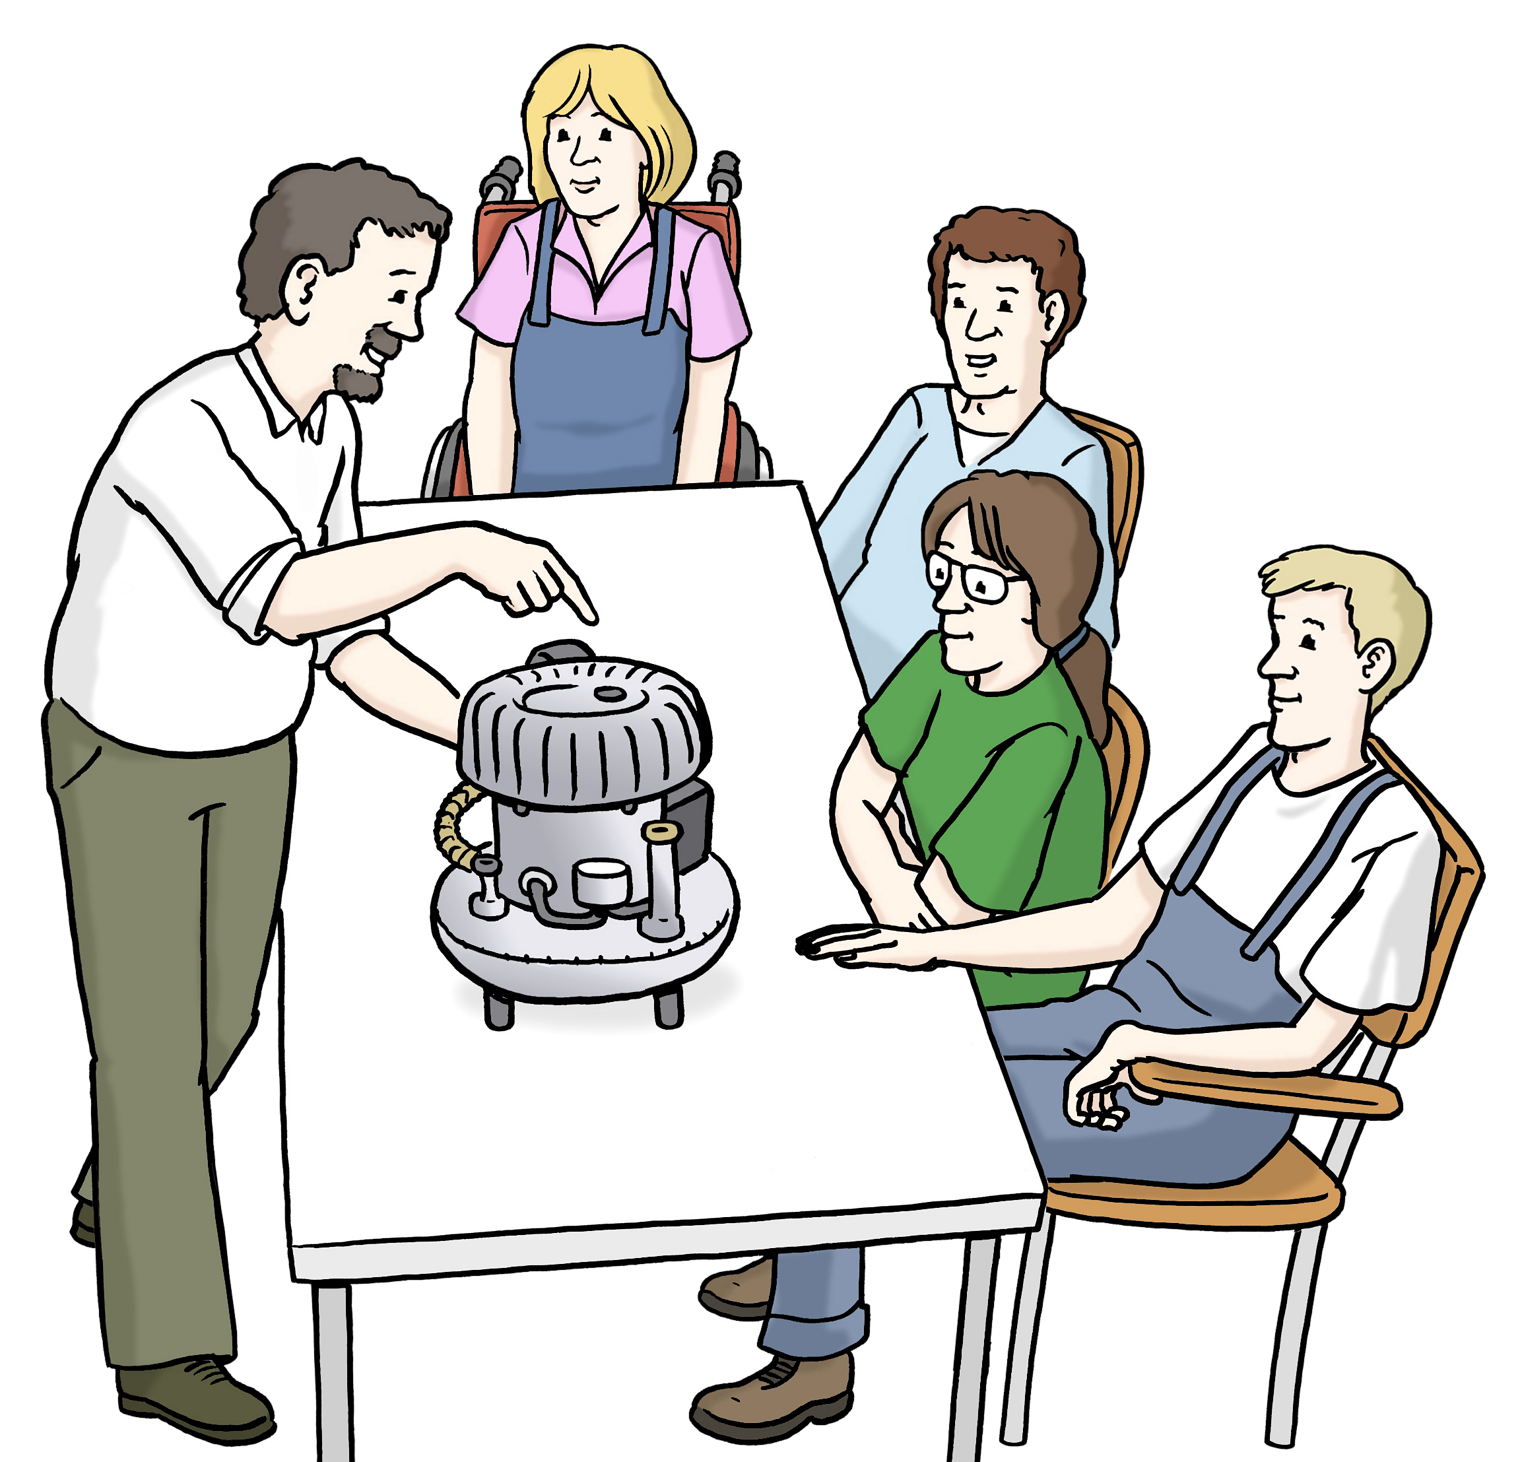 Links steht ein sprechender Lehrer mit Bart und zeigt auf eine Maschine vor ihm auf dem Tisch, an dem vier Schüler sitzen und zuhören